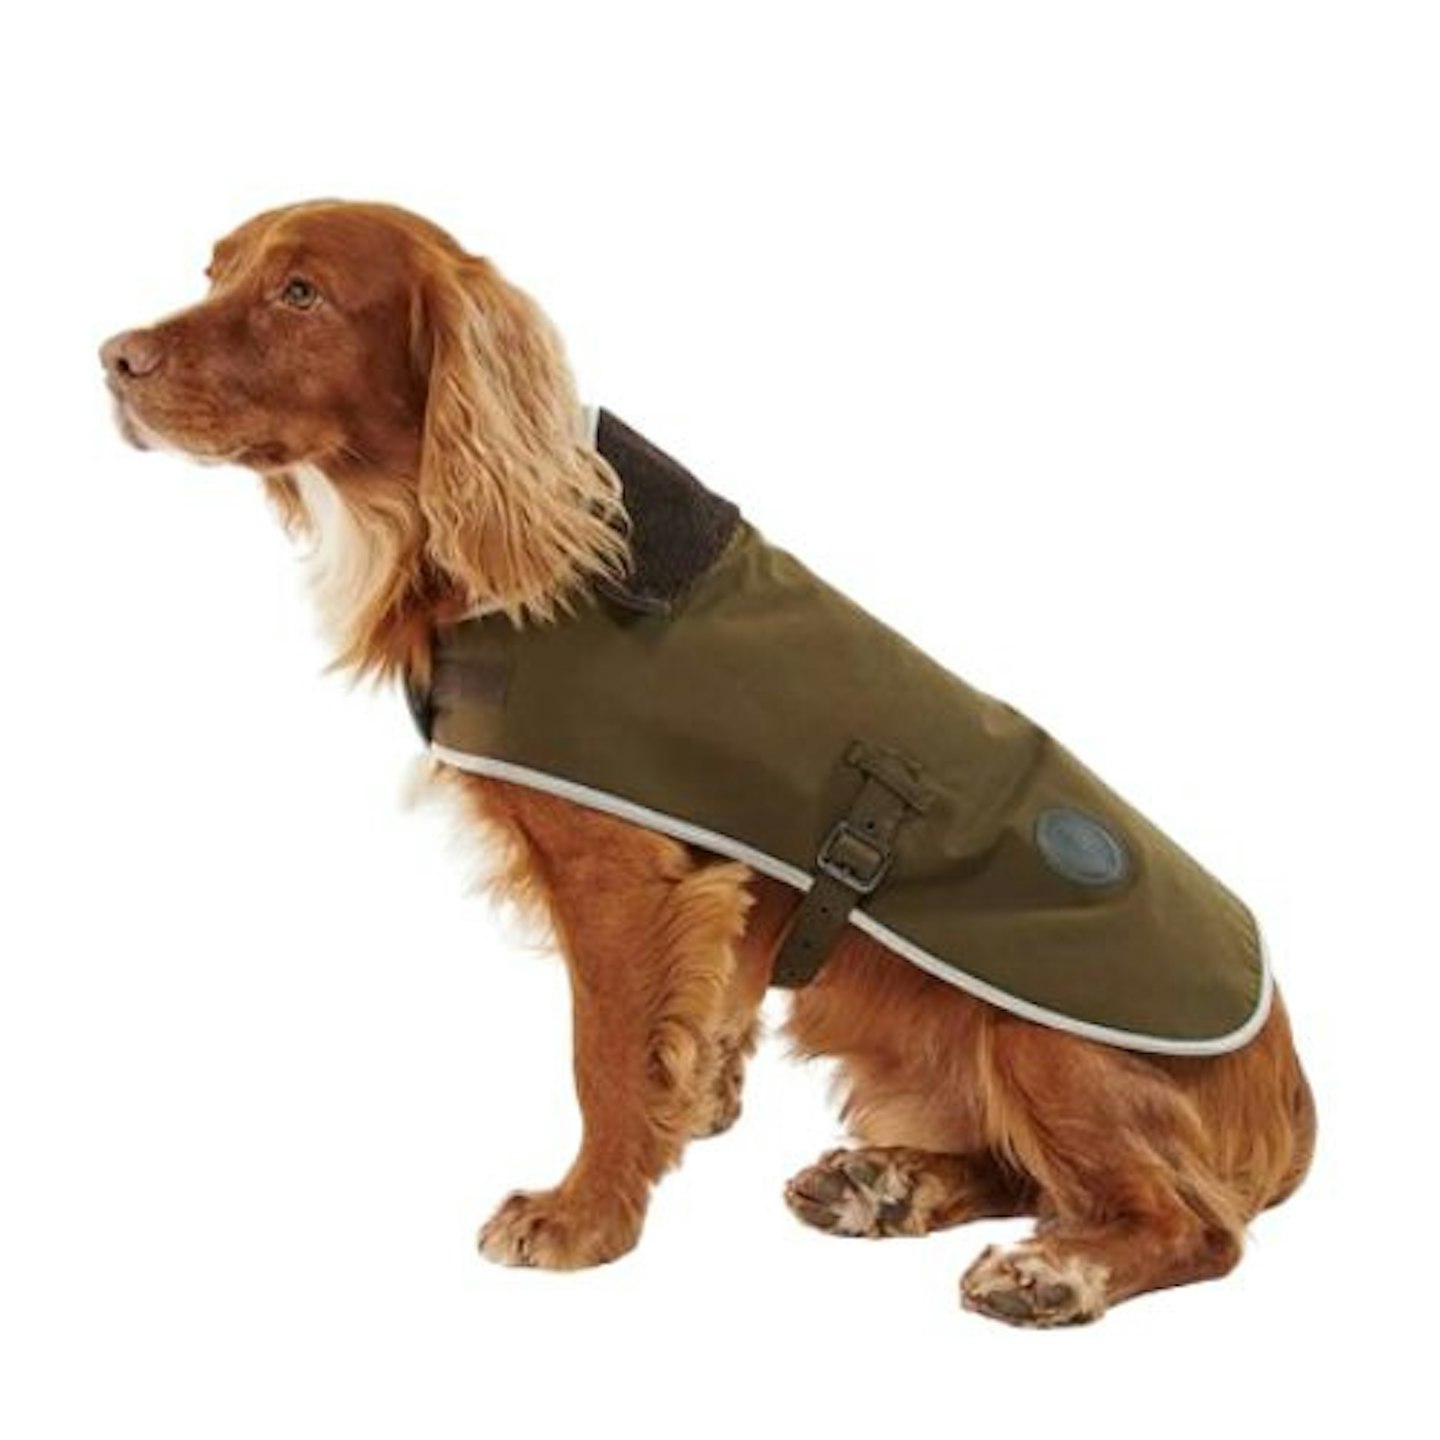 Barbour Waterproof Dog Coat